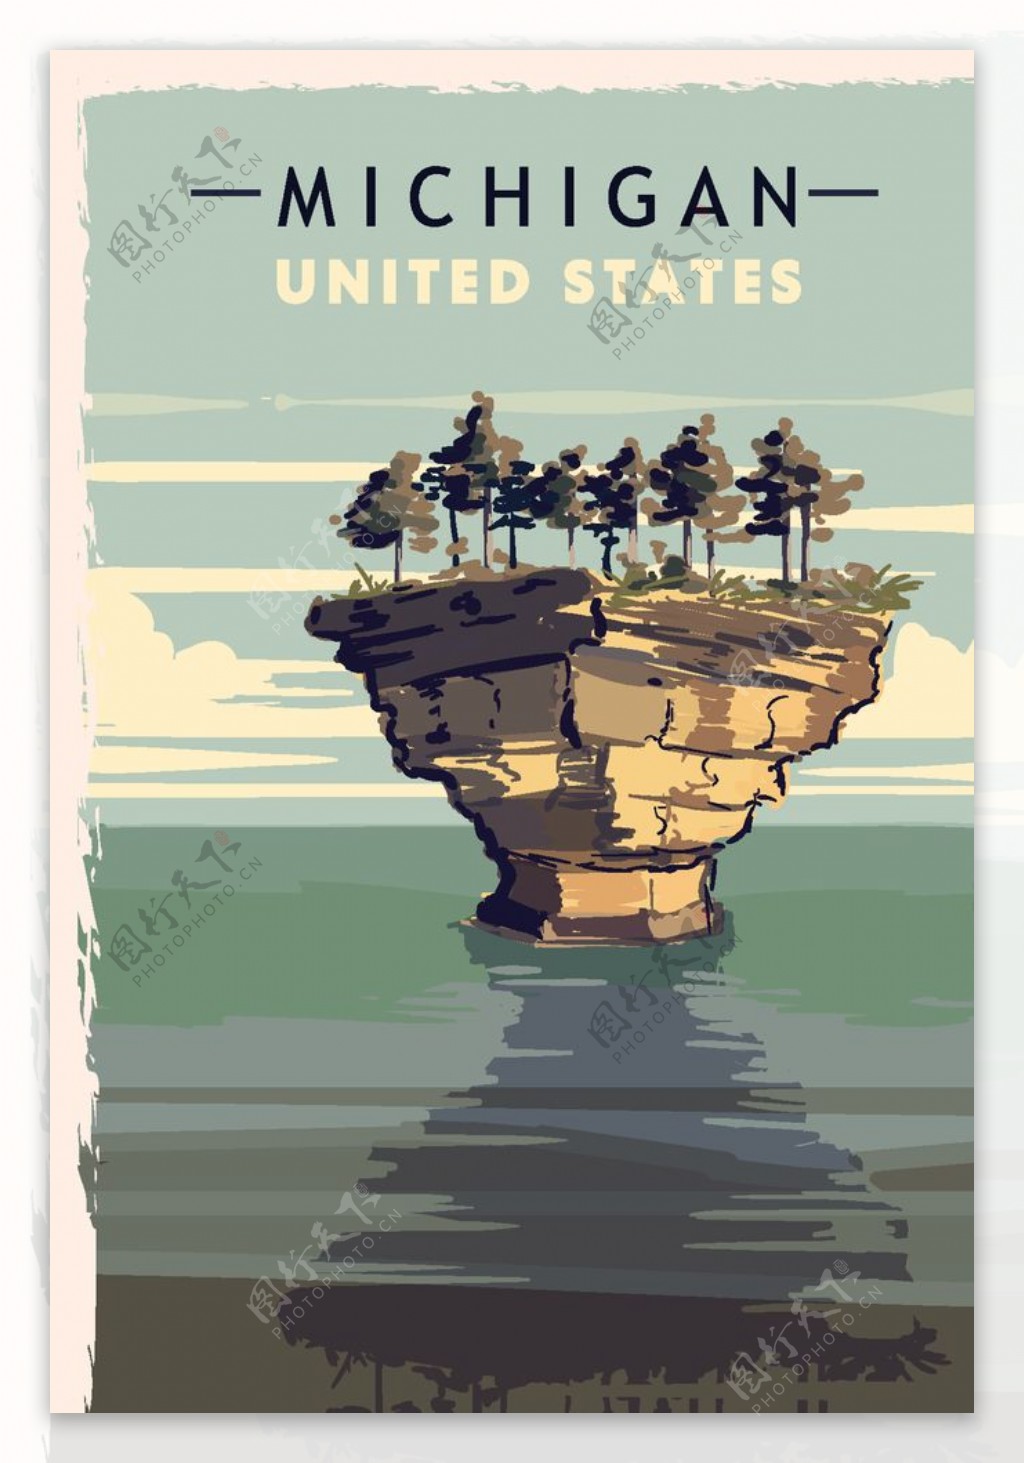 美国西部自然风景插画